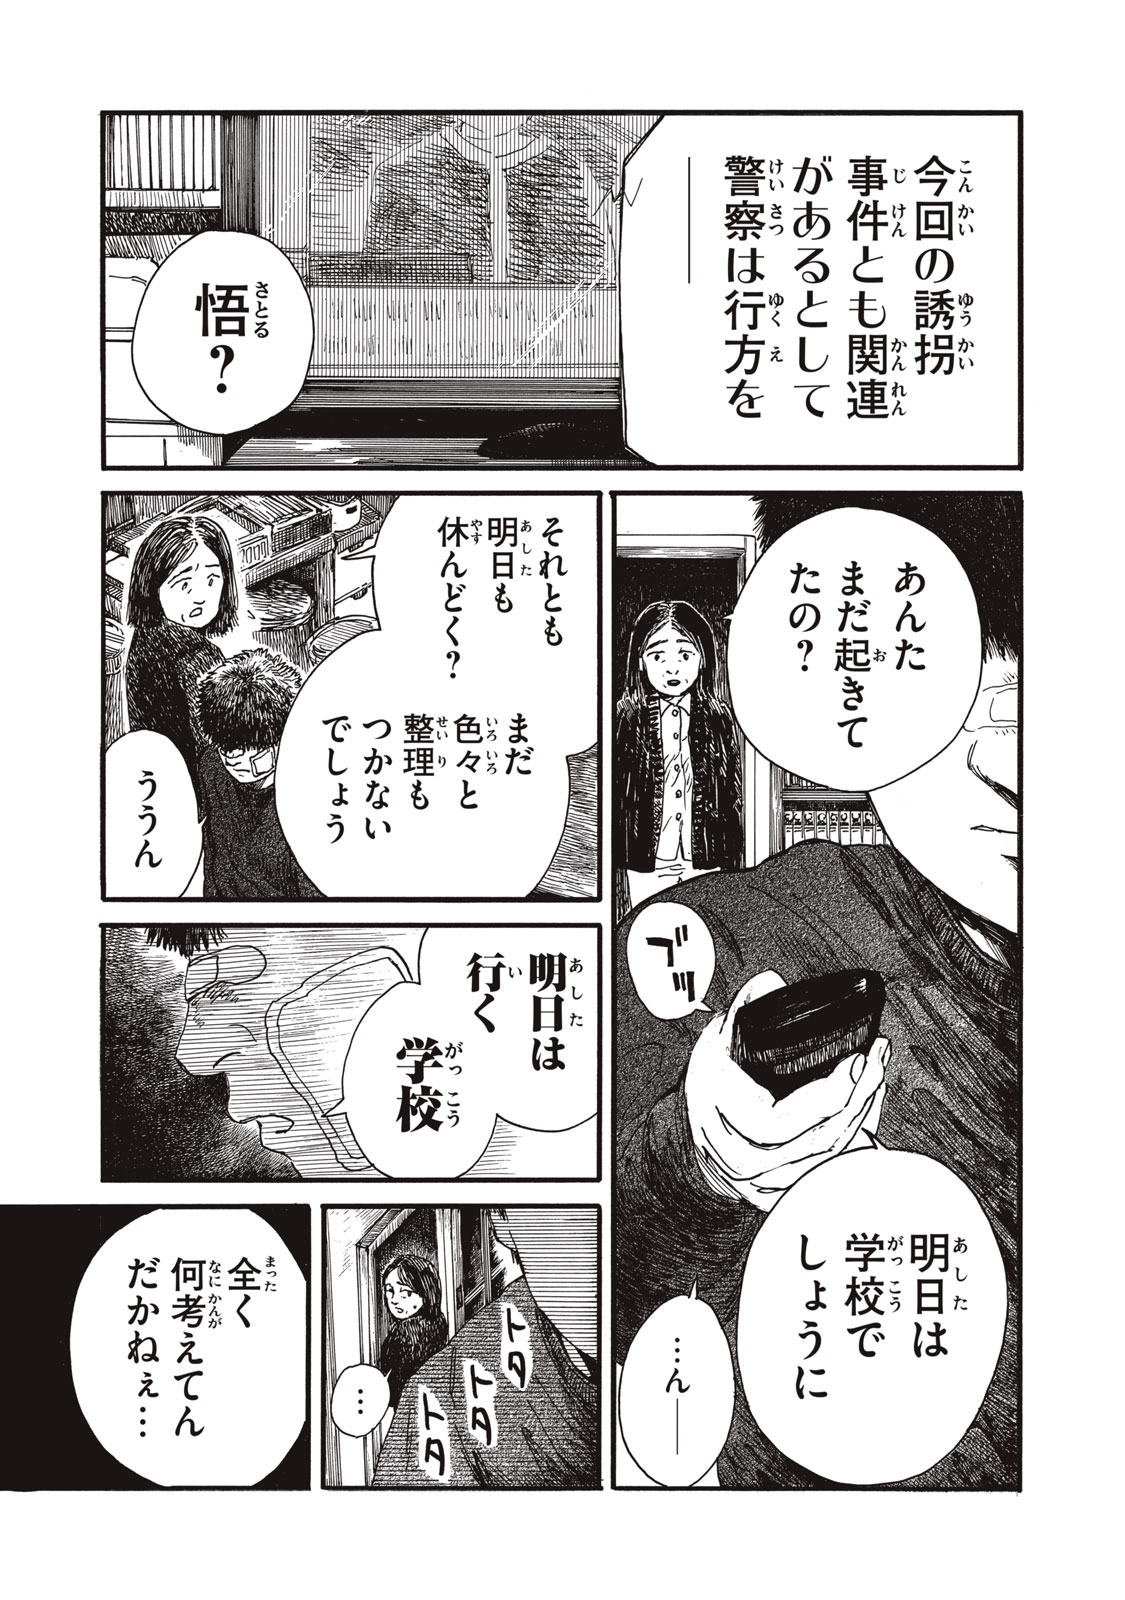 Watashi no Hara no Naka no Bakemono - Chapter 30 - Page 7